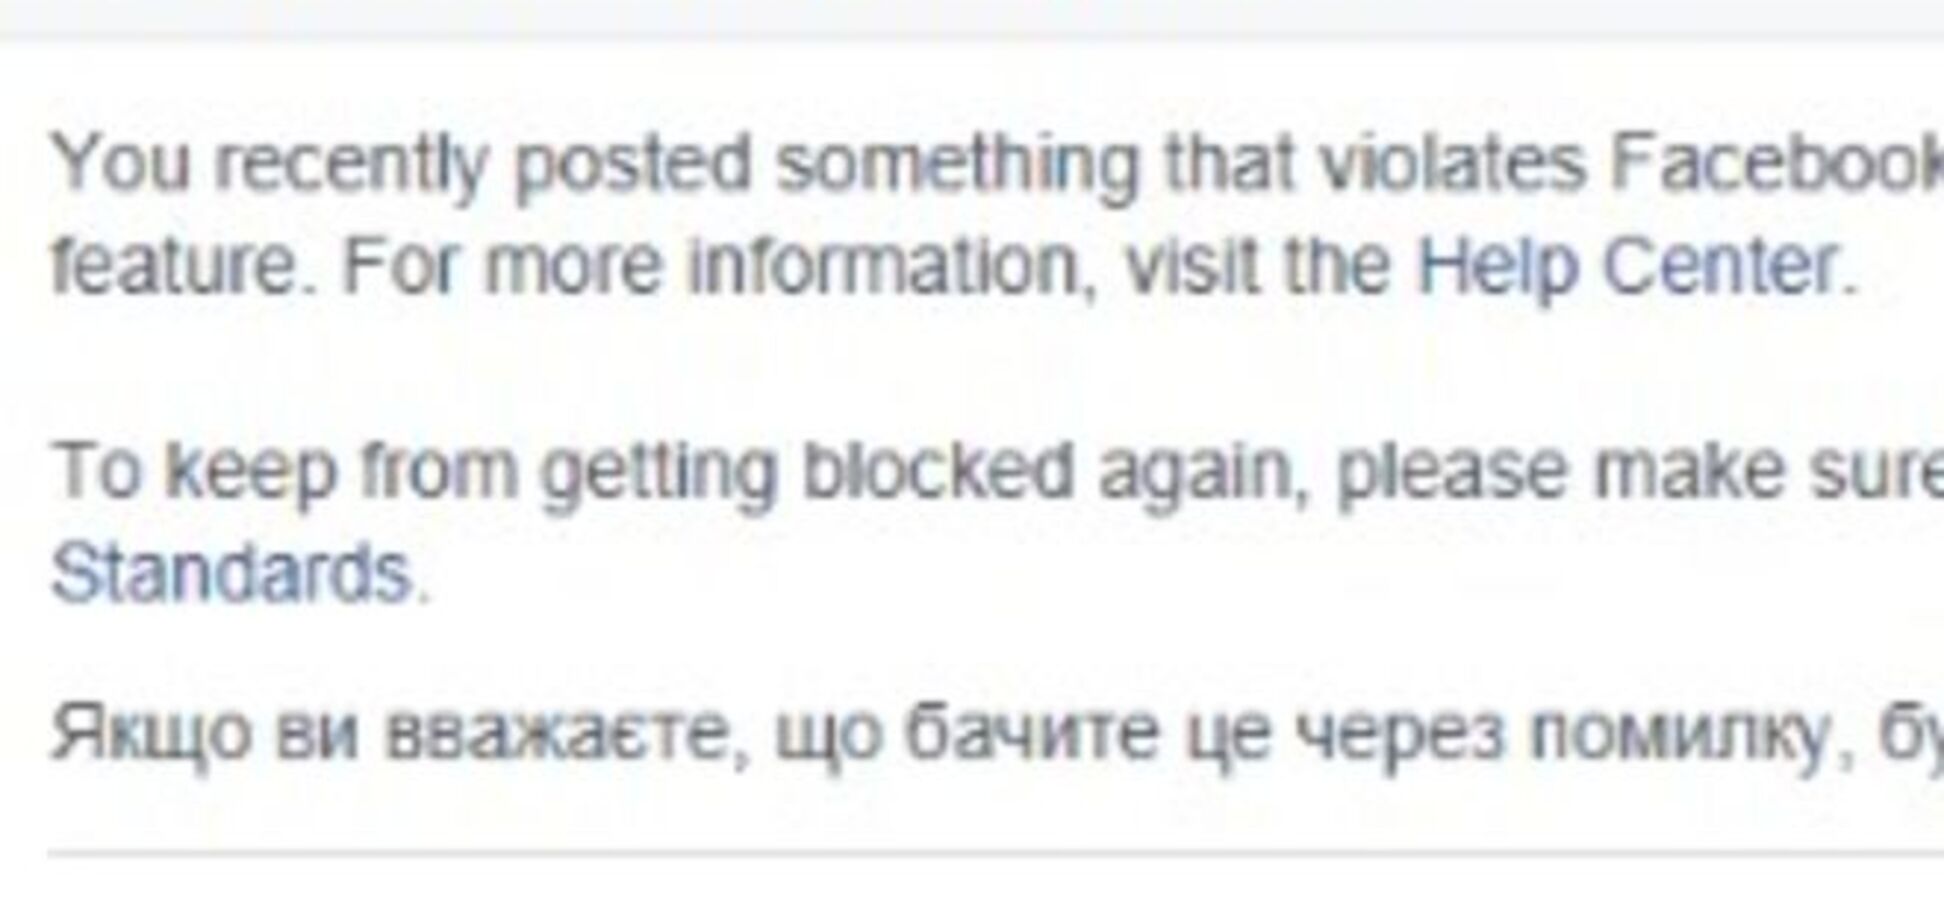 Админов Facebook в СНГ уличили в поддержке пророссийских страниц